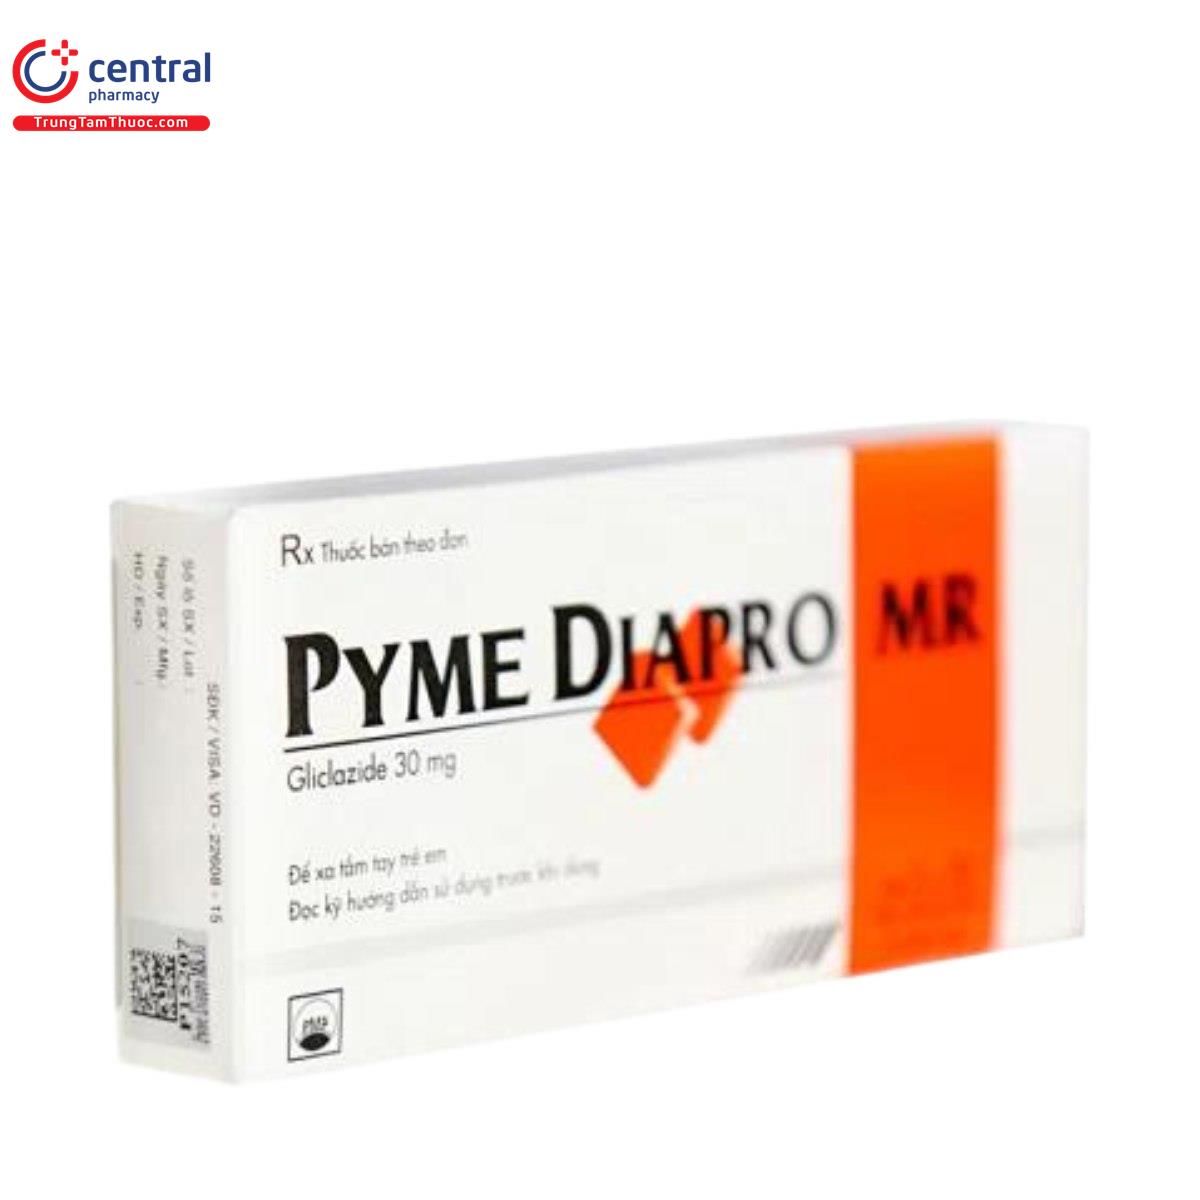 pyme diapro mr 30mg 7 R7720